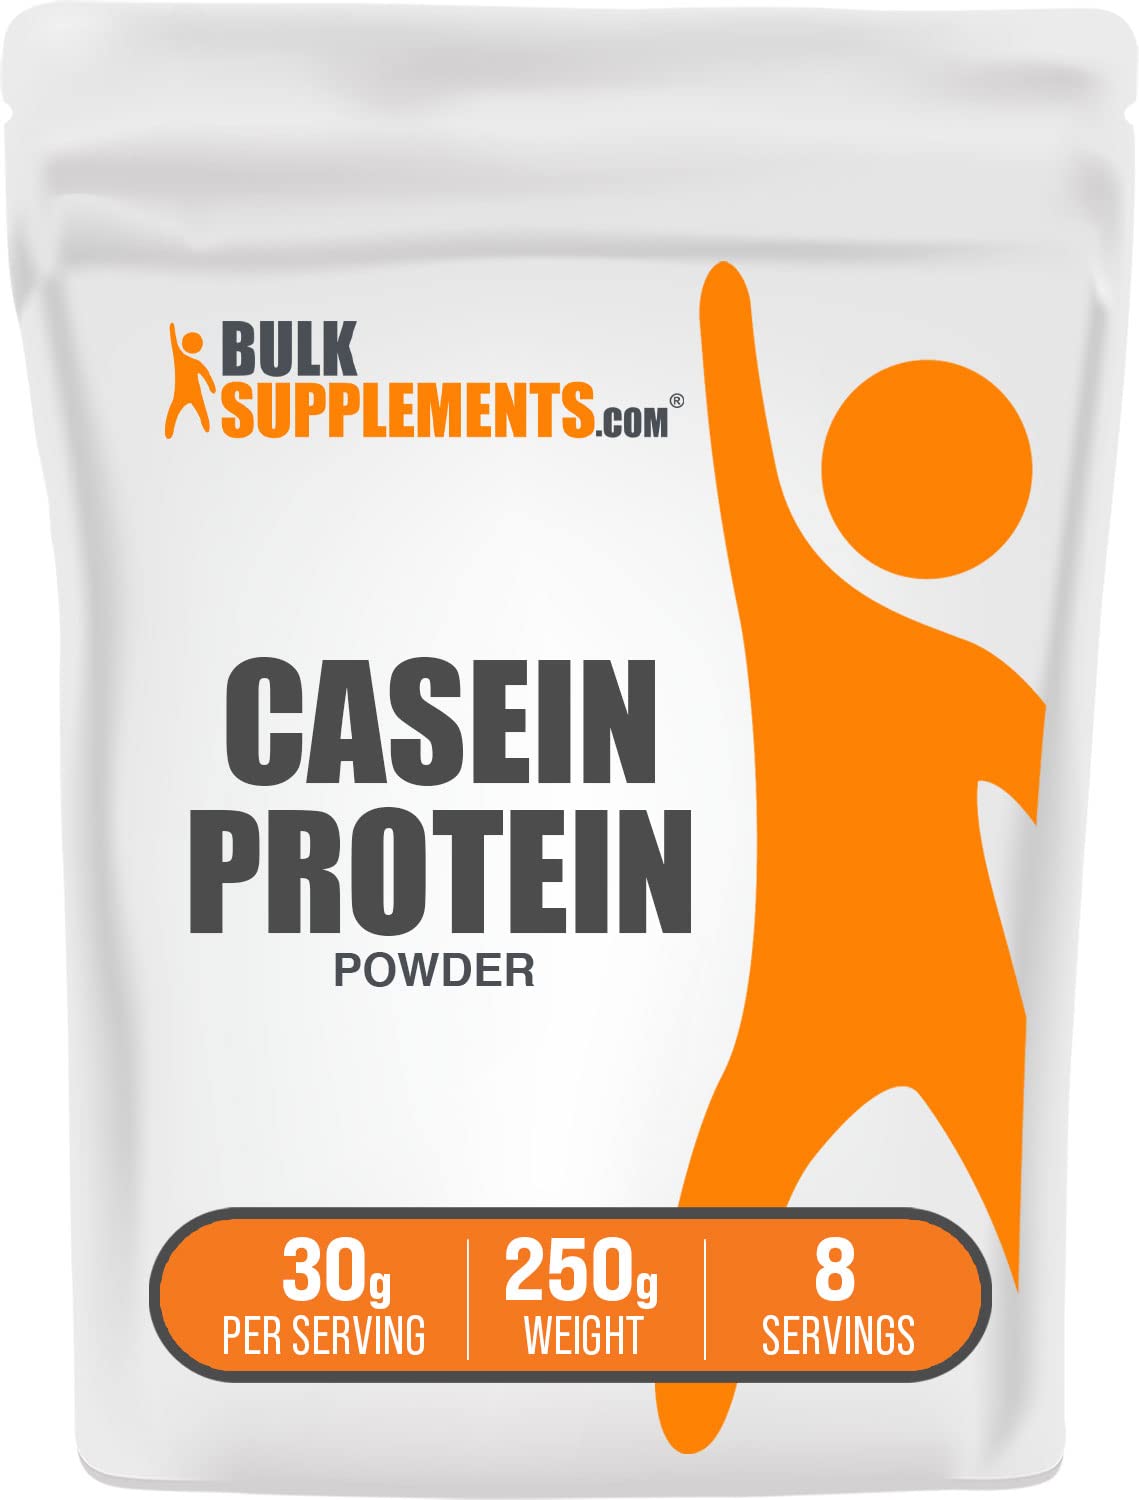 BULKSUPPLEMENTS.COM Casein Protein Powder - Whey Casein Blend Protein Powder - Protein Powder Casein - Micellar Casein Powder - 